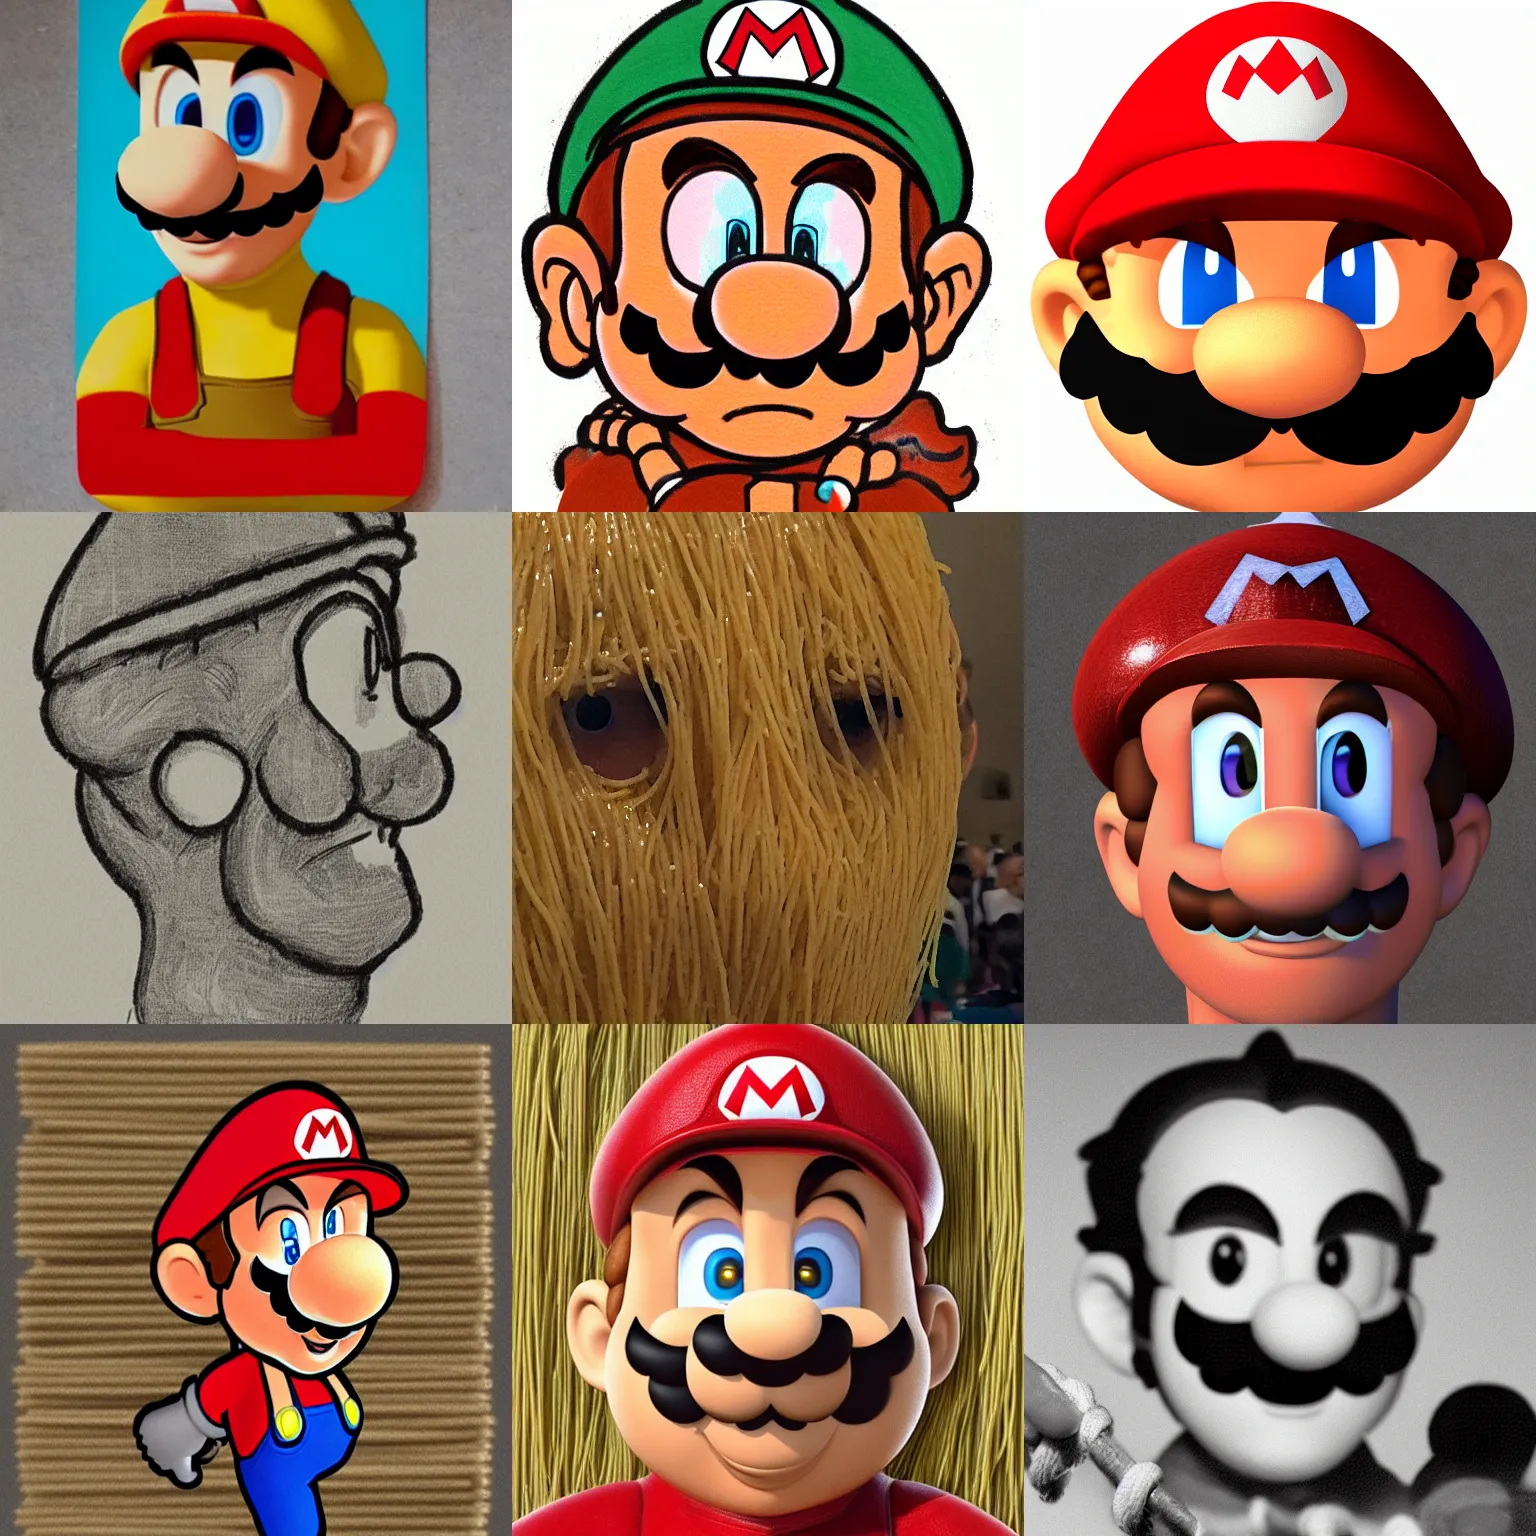 Prompt: Mario's head as spaghetti